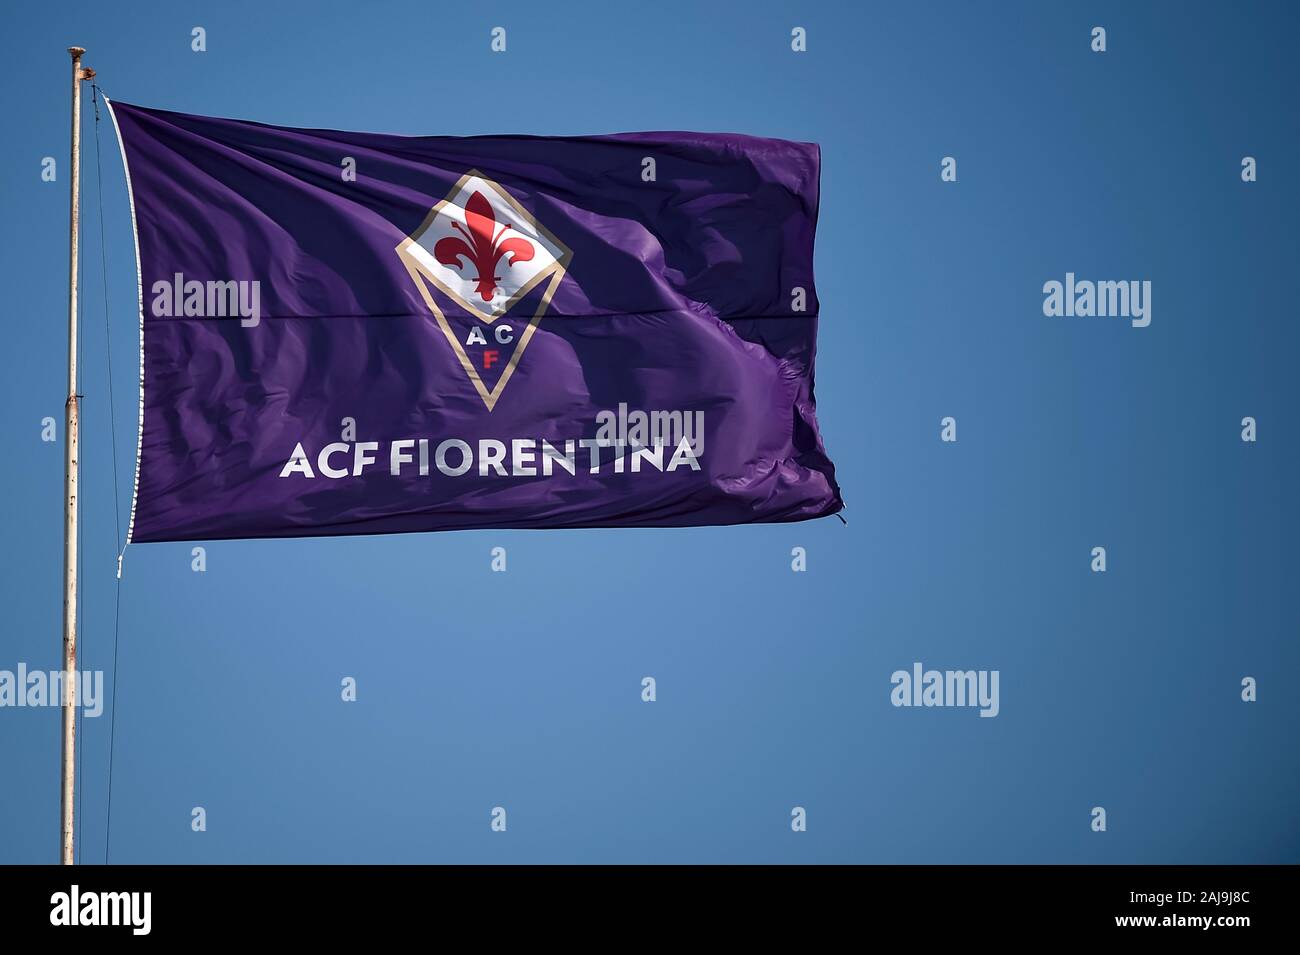 Firenze, Italia. 14 Settembre 2019: una bandiera di ACF Fiorentina onde prima della serie di una partita di calcio tra ACF Fiorentina e la Juventus FC. La partita si è conclusa con un pareggio (0-0. Credito: Nicolò Campo/Alamy Live News Foto Stock